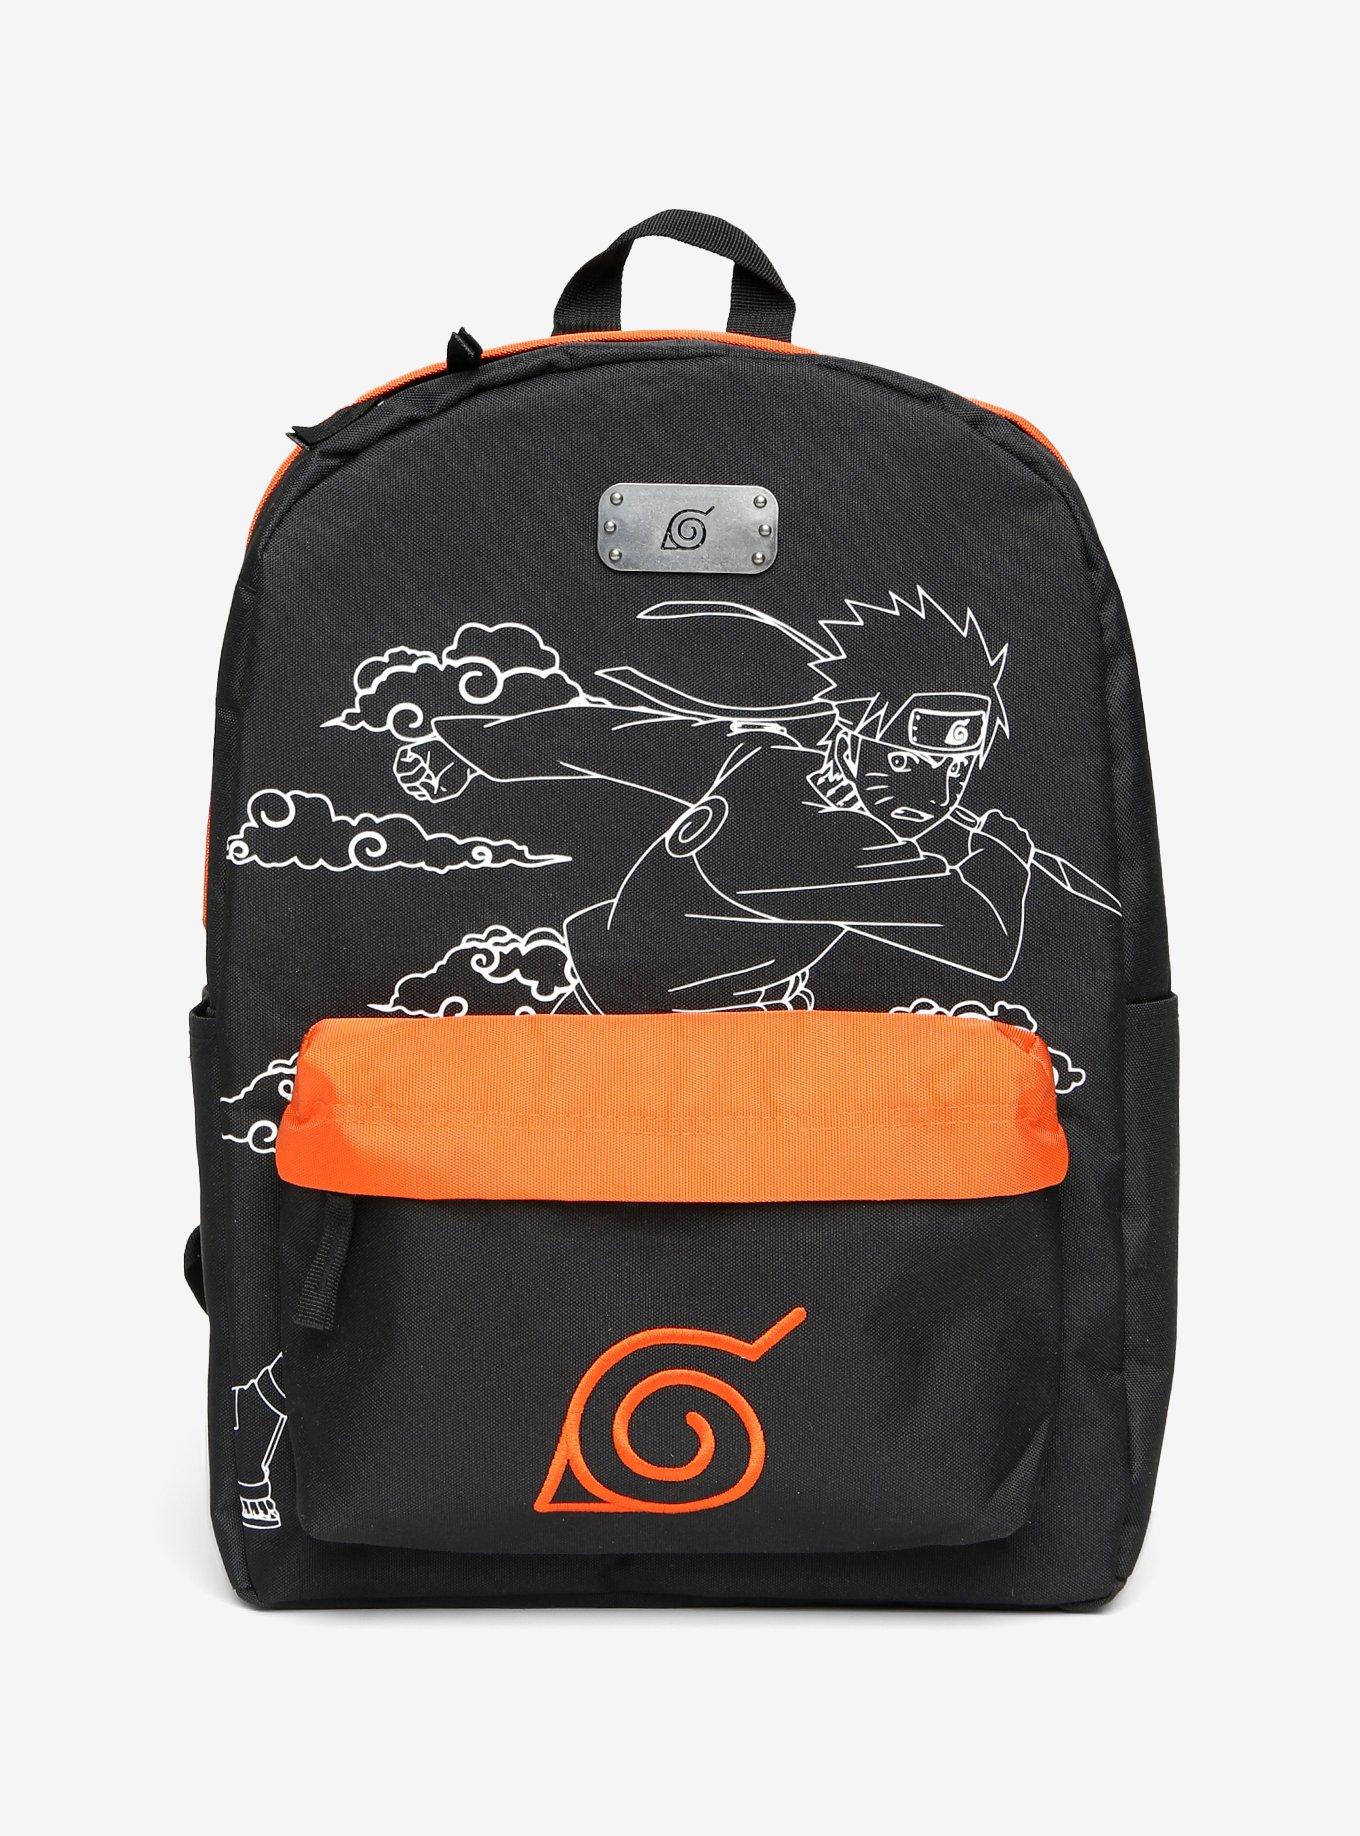 Naruto Shippuden Kakashi Built-Up Backpack, Hot Topic